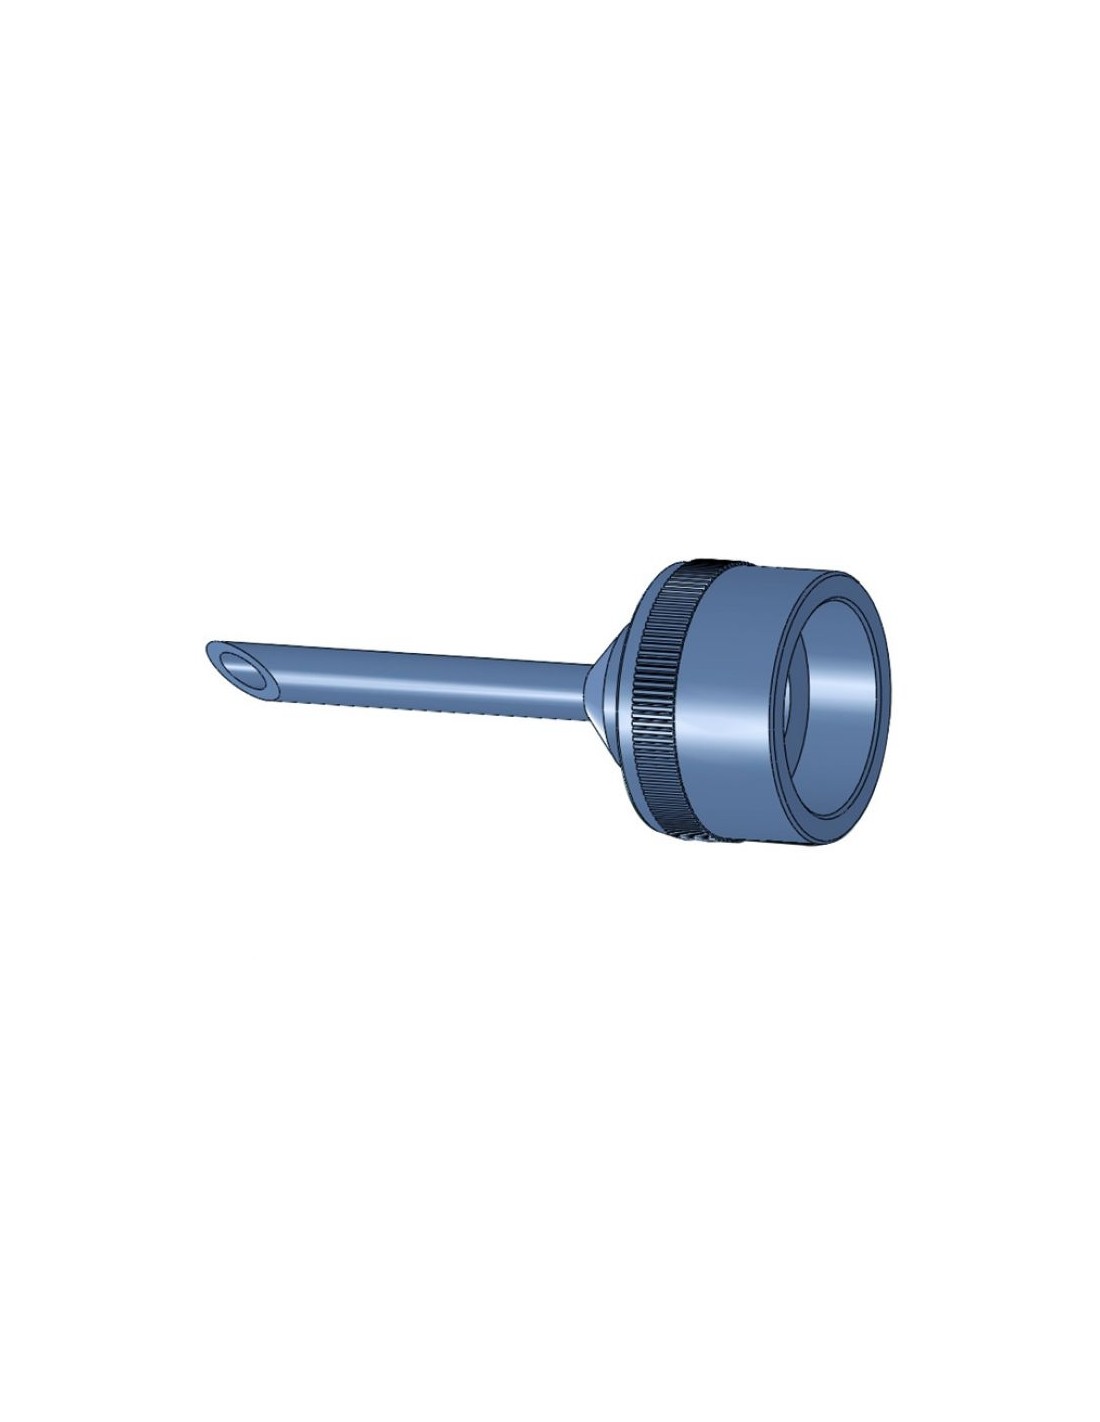 Spout ÃƒÂ¸ 8 mm for adapter